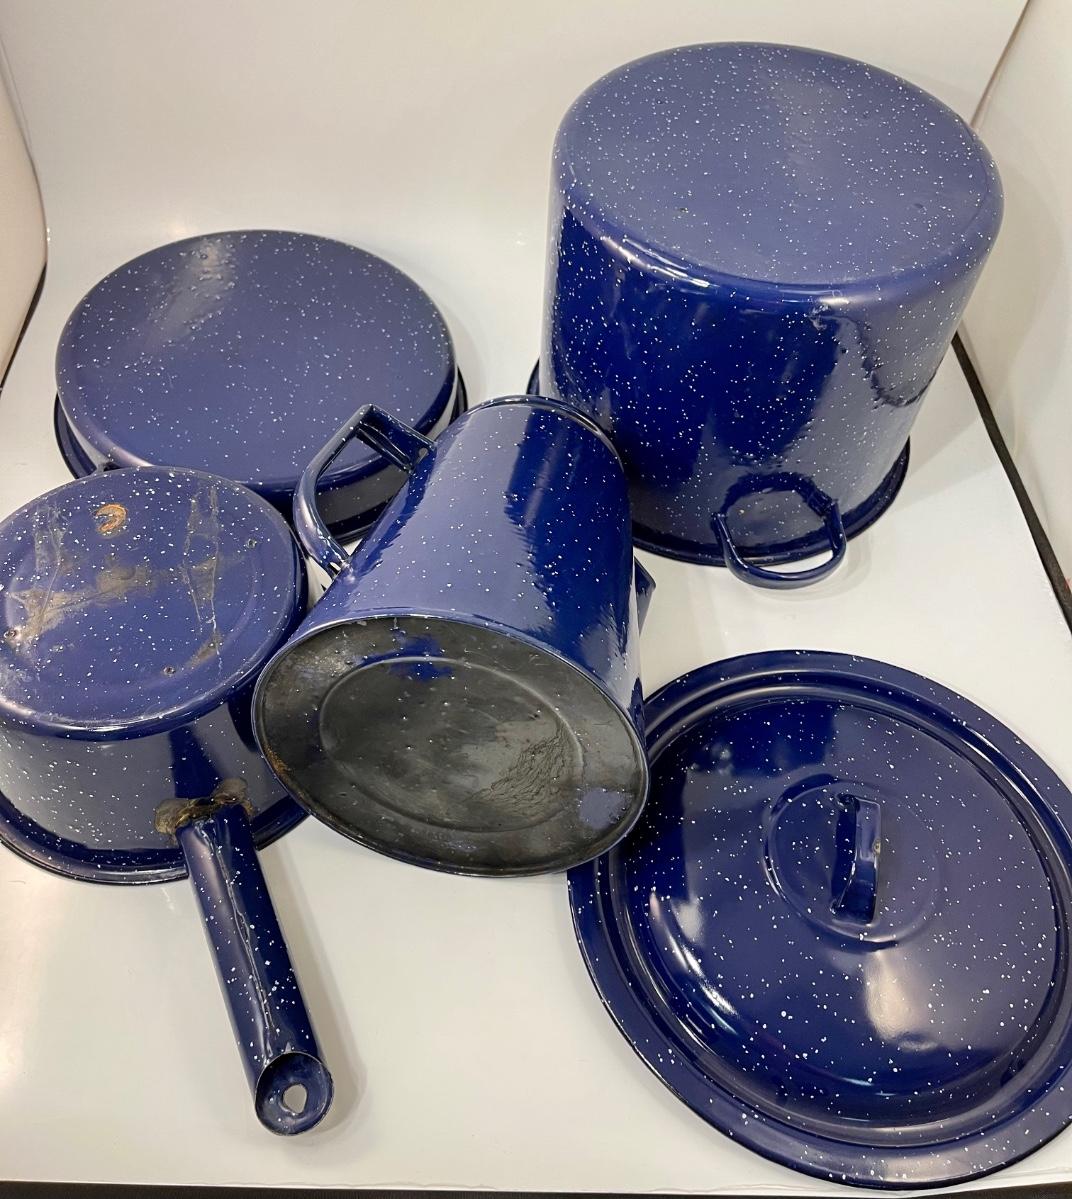 Vintage Blue Speckled Enamelware Camping Cook Out Kitchen Pots